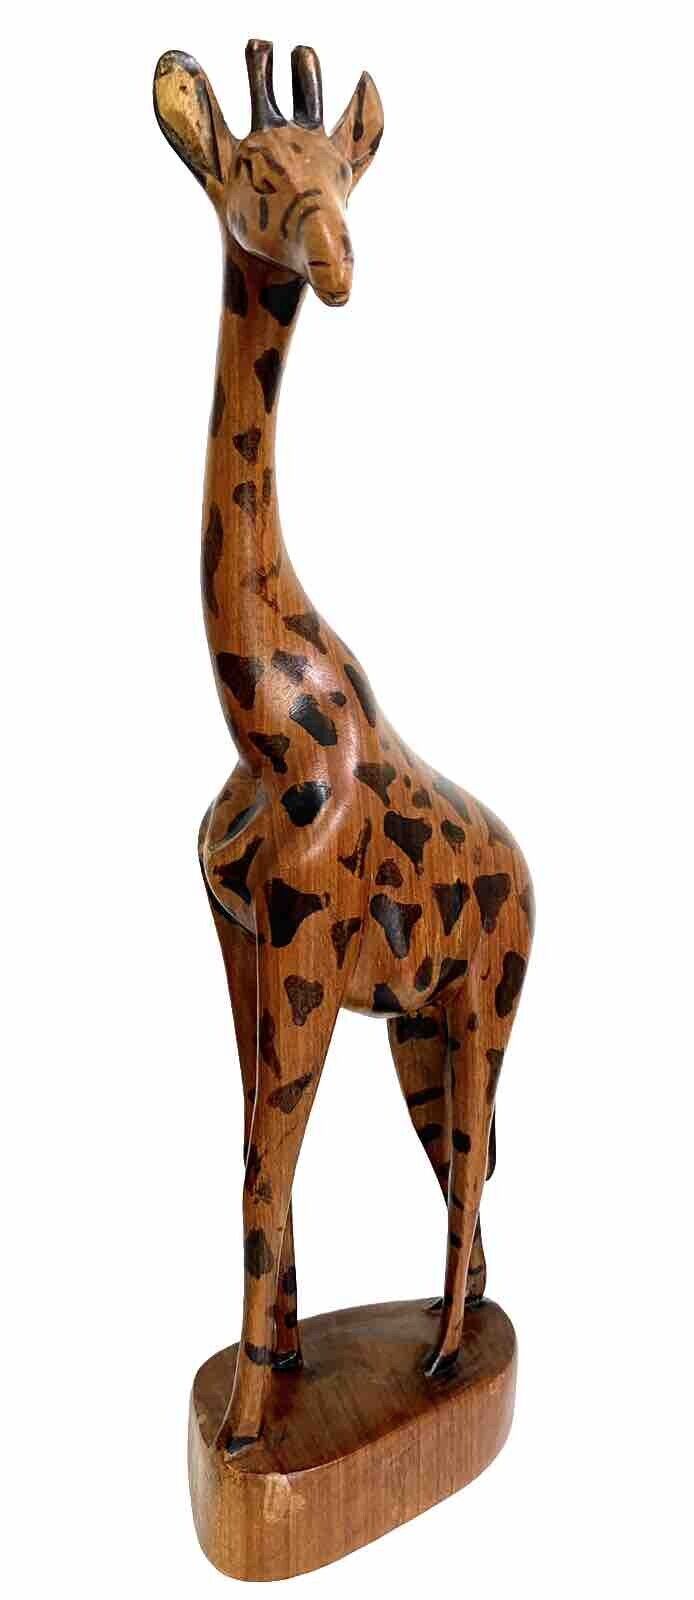 Giraffe Hand Carved Wooden Statue Made In Kenya 12” Tall Africa Safari Decor